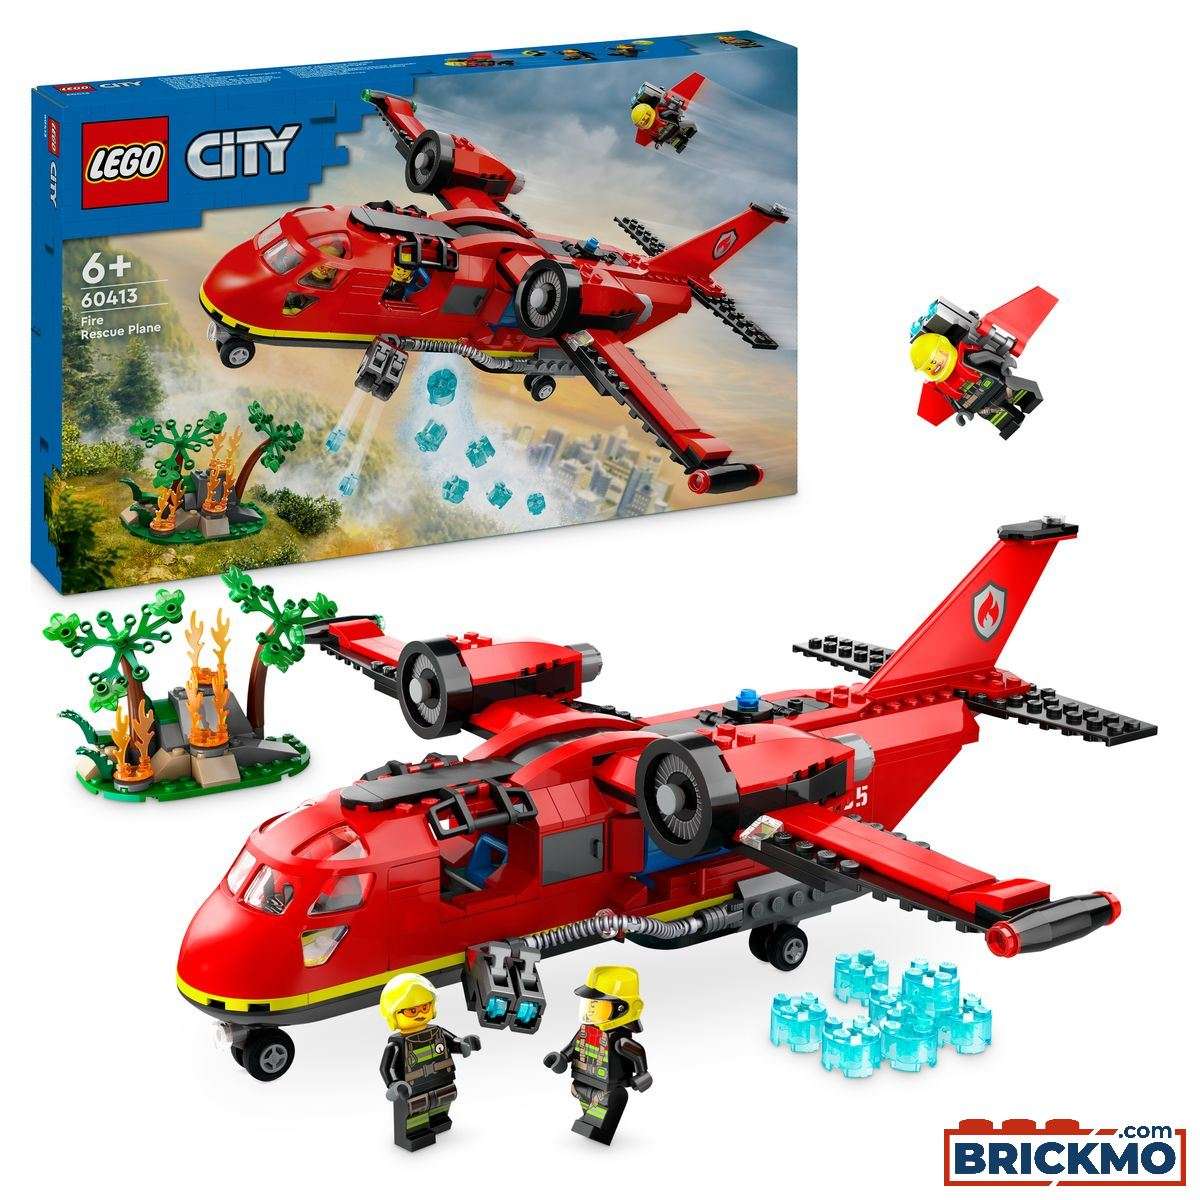 LEGO City 60413 Fire Rescue Plane 60413